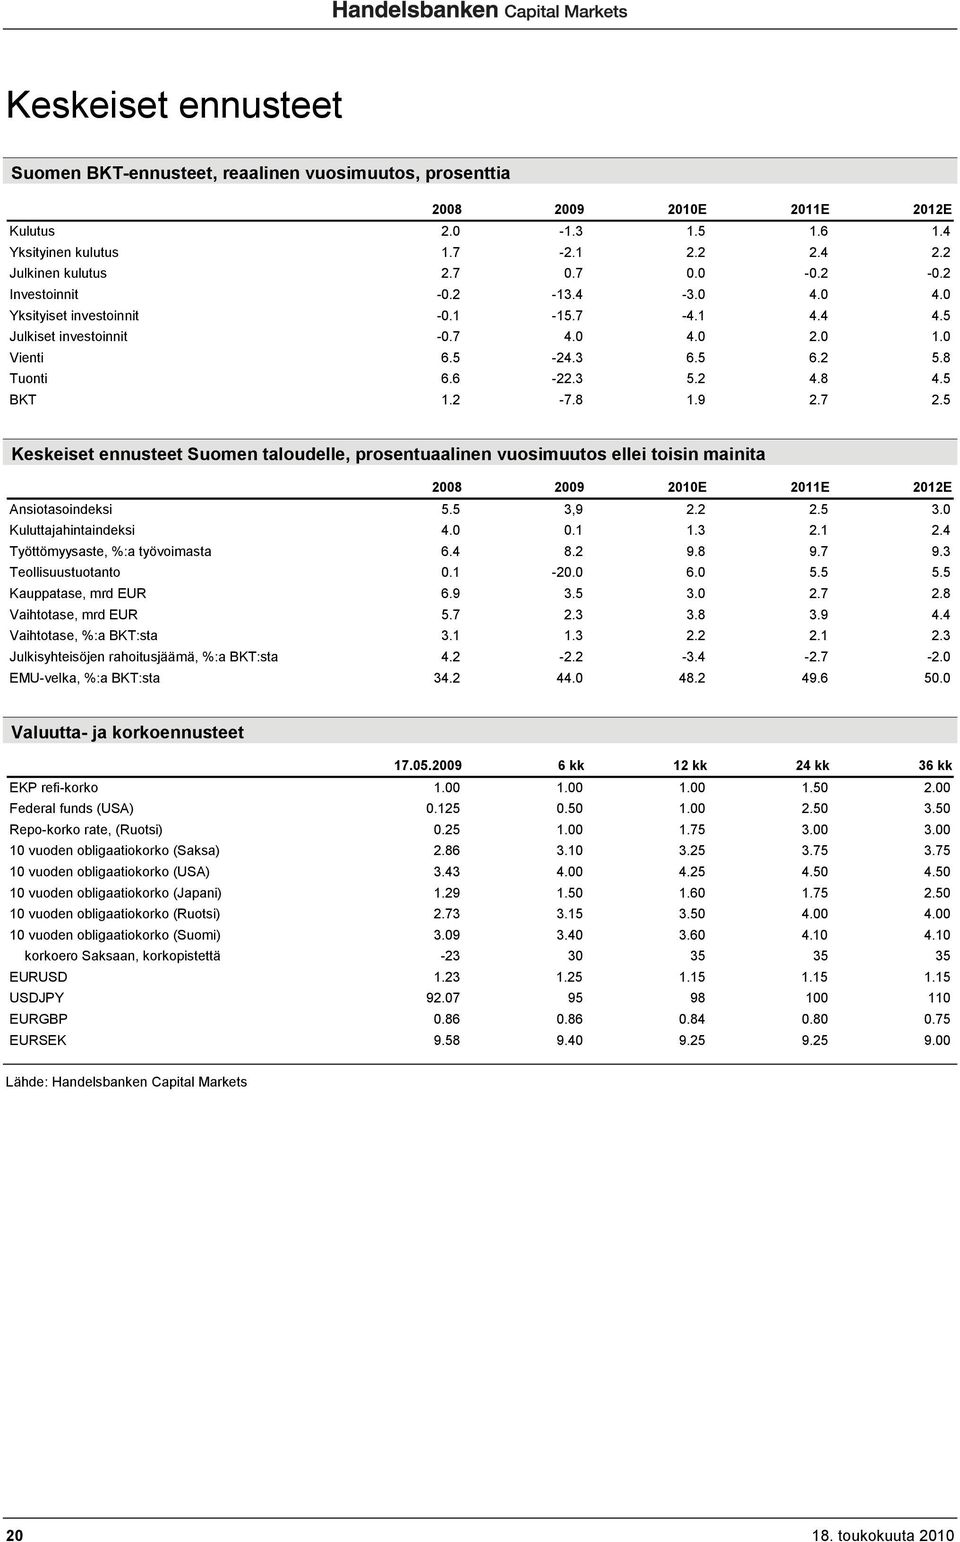 9 2.7 2.5 Keskeiset ennusteet Suomen taloudelle, prosentuaalinen vuosimuutos ellei toisin mainita 2008 2009 2010E 2011E 2012E Ansiotasoindeksi 5.5 3,9 2.2 2.5 3.0 Kuluttajahintaindeksi 4.0 0.1 1.3 2.